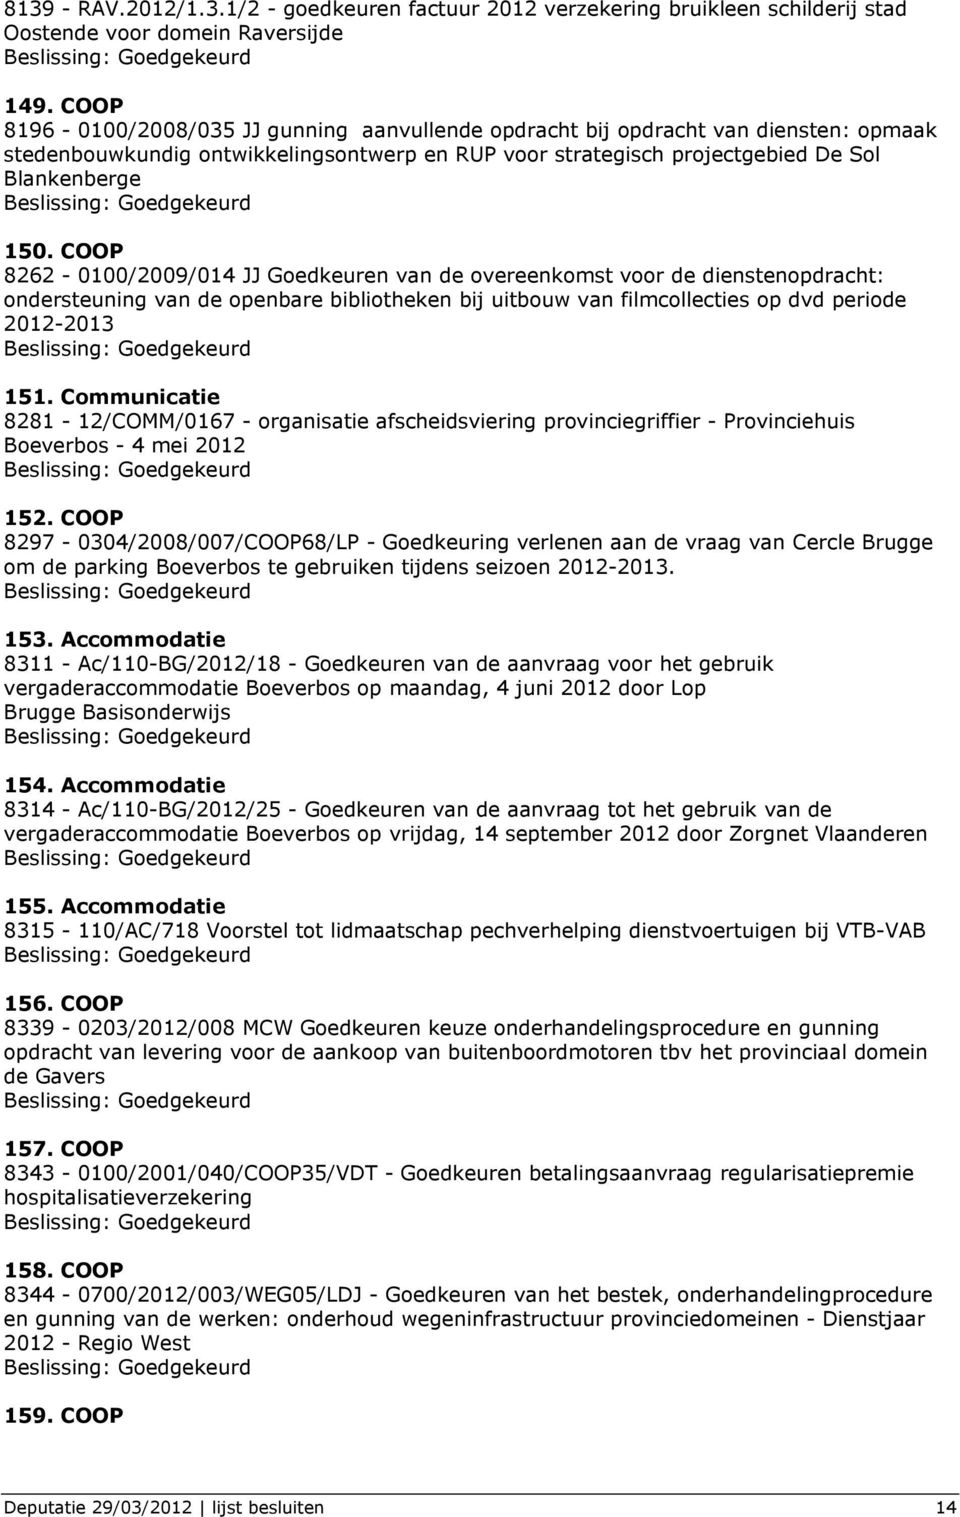 COOP 8262-0100/2009/014 JJ Goedkeuren van de overeenkomst voor de dienstenopdracht: ondersteuning van de openbare bibliotheken bij uitbouw van filmcollecties op dvd periode 2012-2013 151.